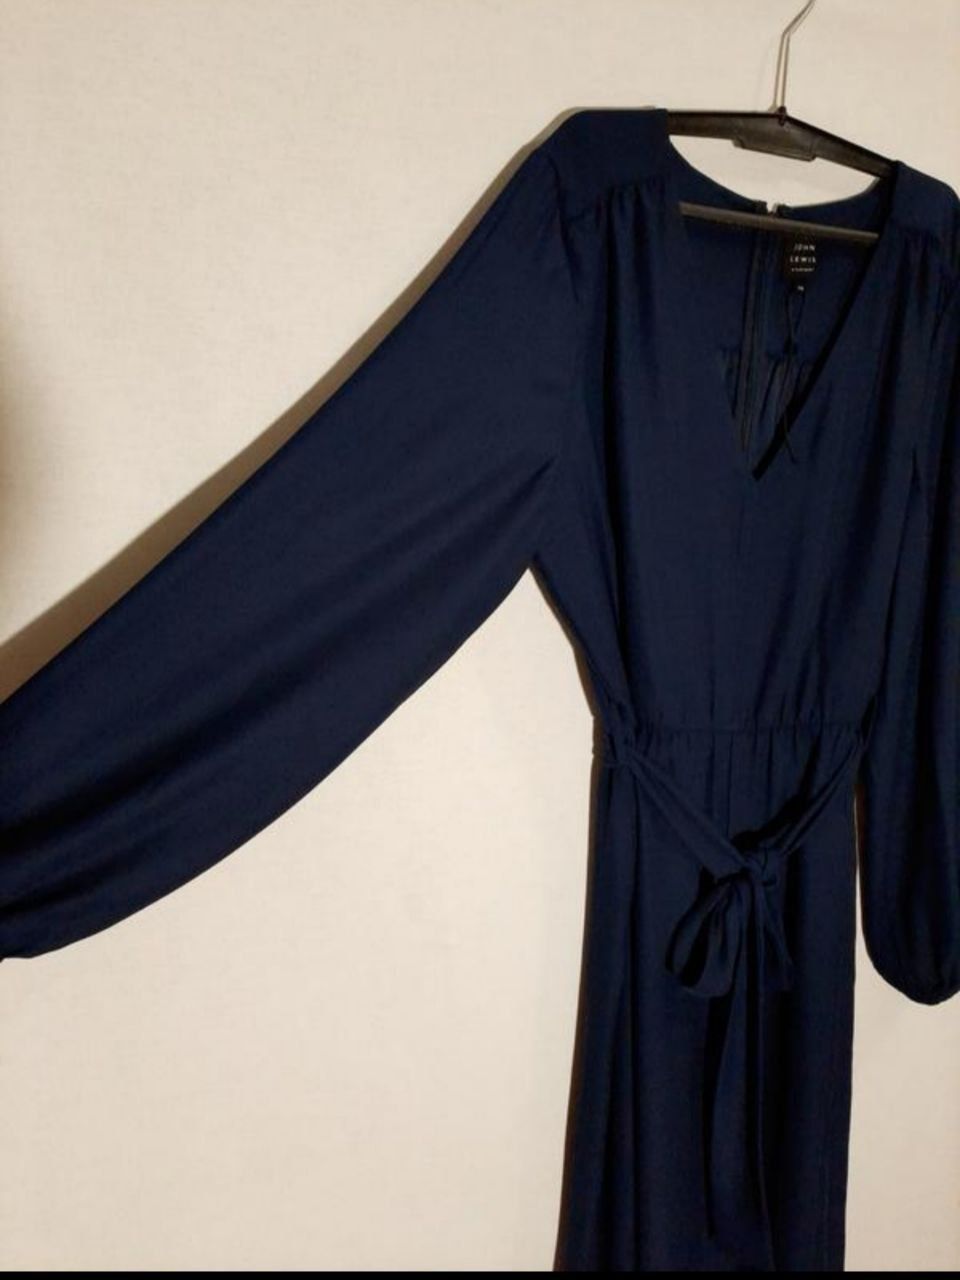 Нарядный темно-синий вечерний брючный костюм(комбинезон )Большой разме